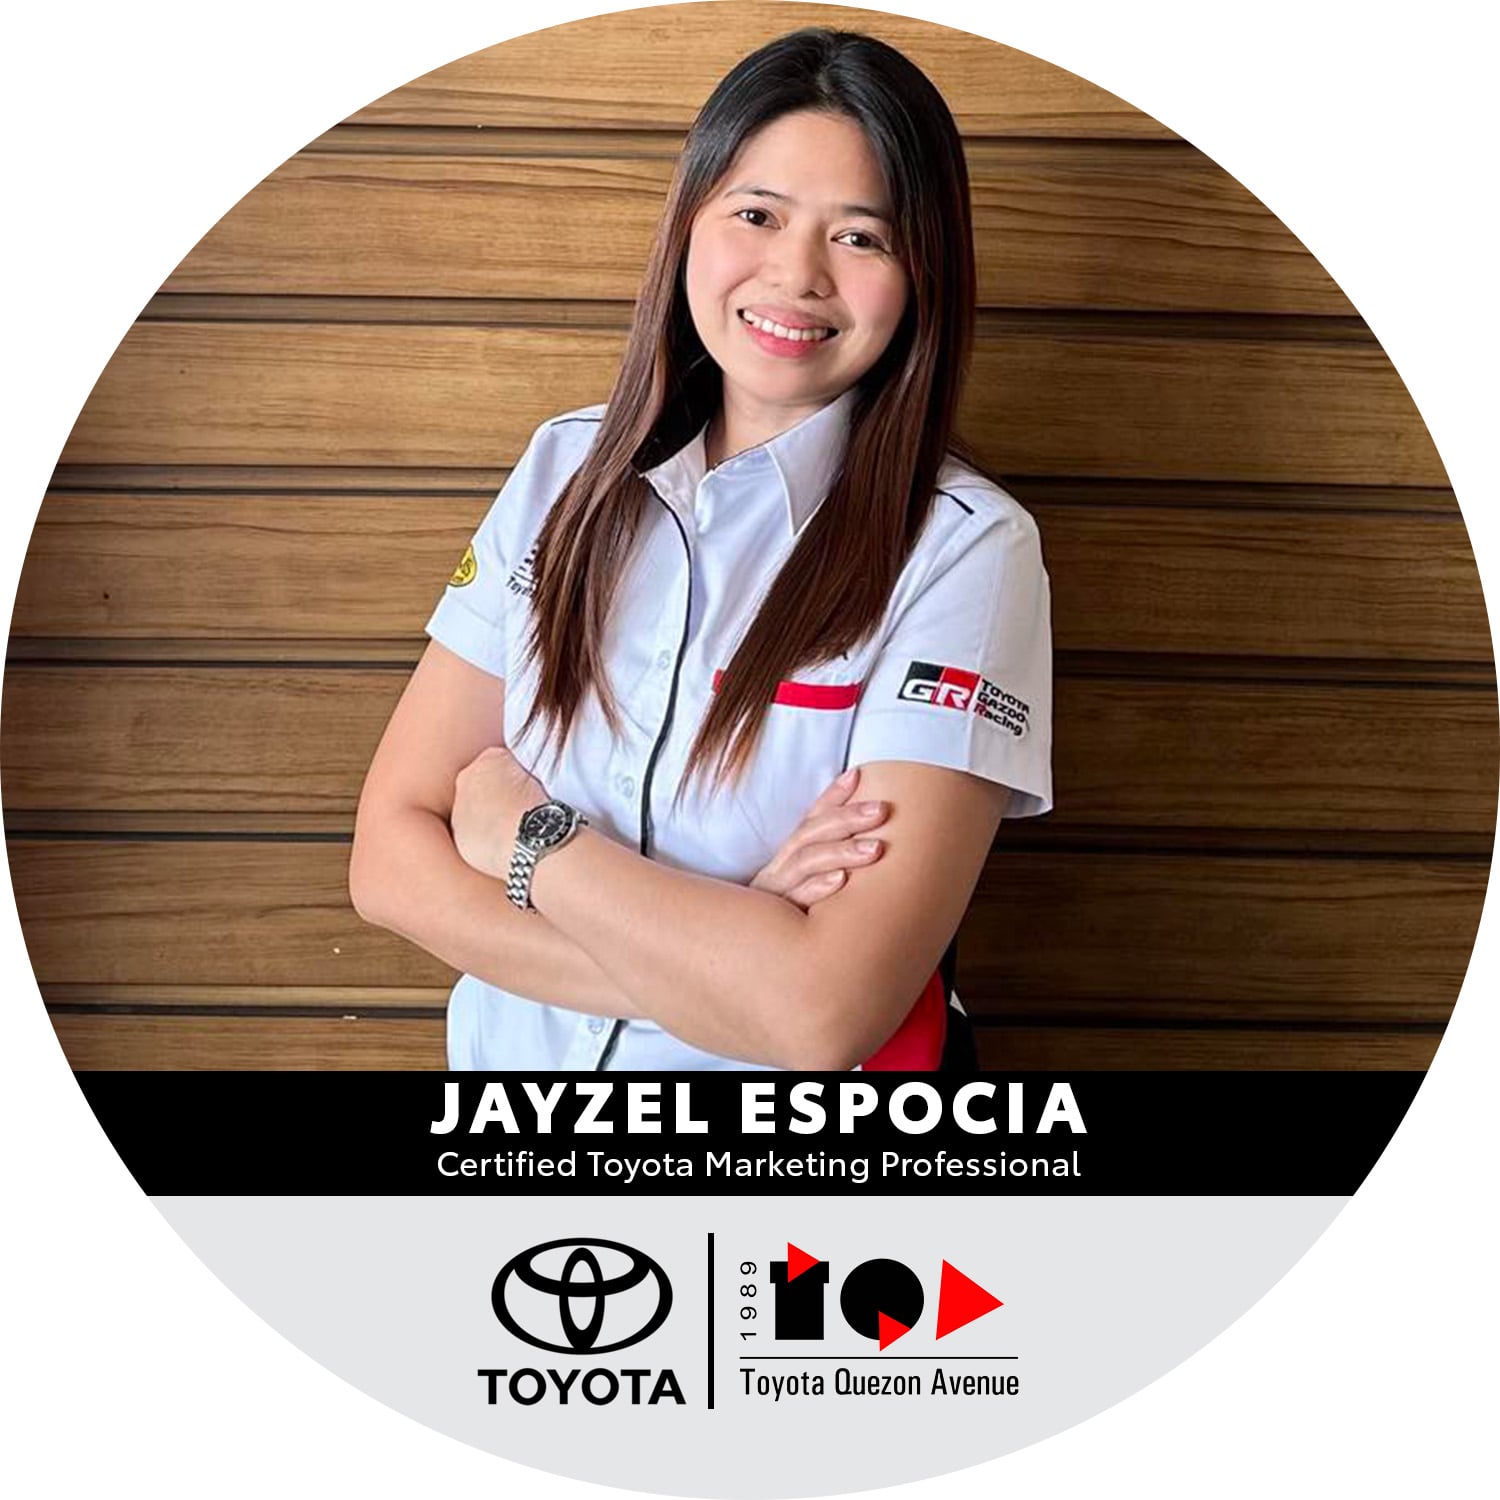 Certified Toyota Marketing Professionals - Jayzel Espocia